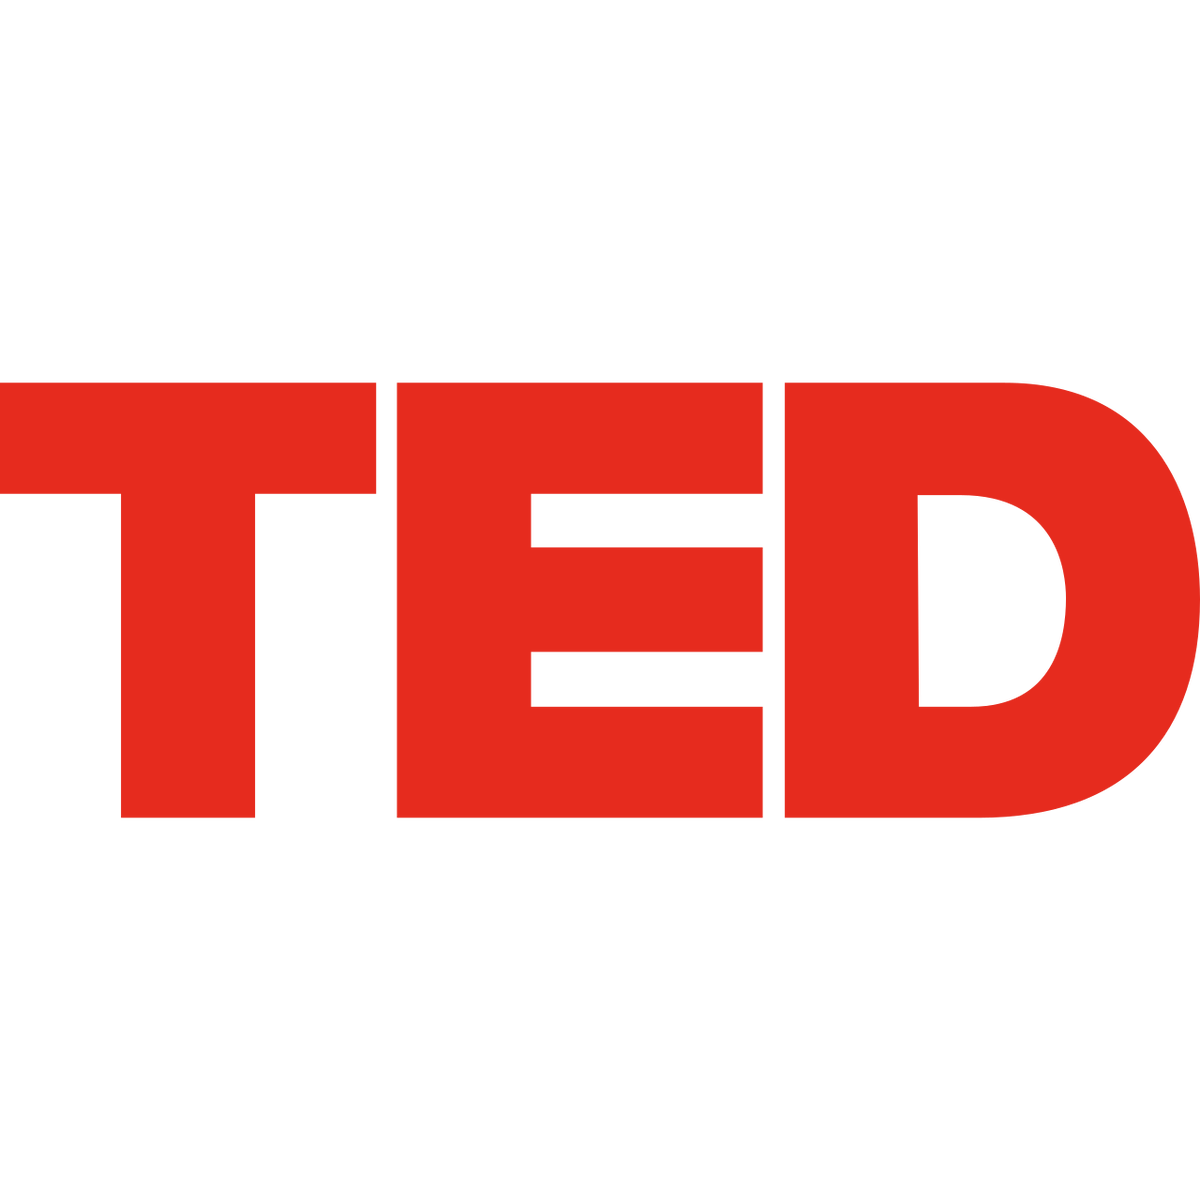 Добро пожаловать в TED Downloader! Ted downloader поможет вам загружать видео с сайта TED. Вы можете легко сохранить видео ted с их веб-сайта.